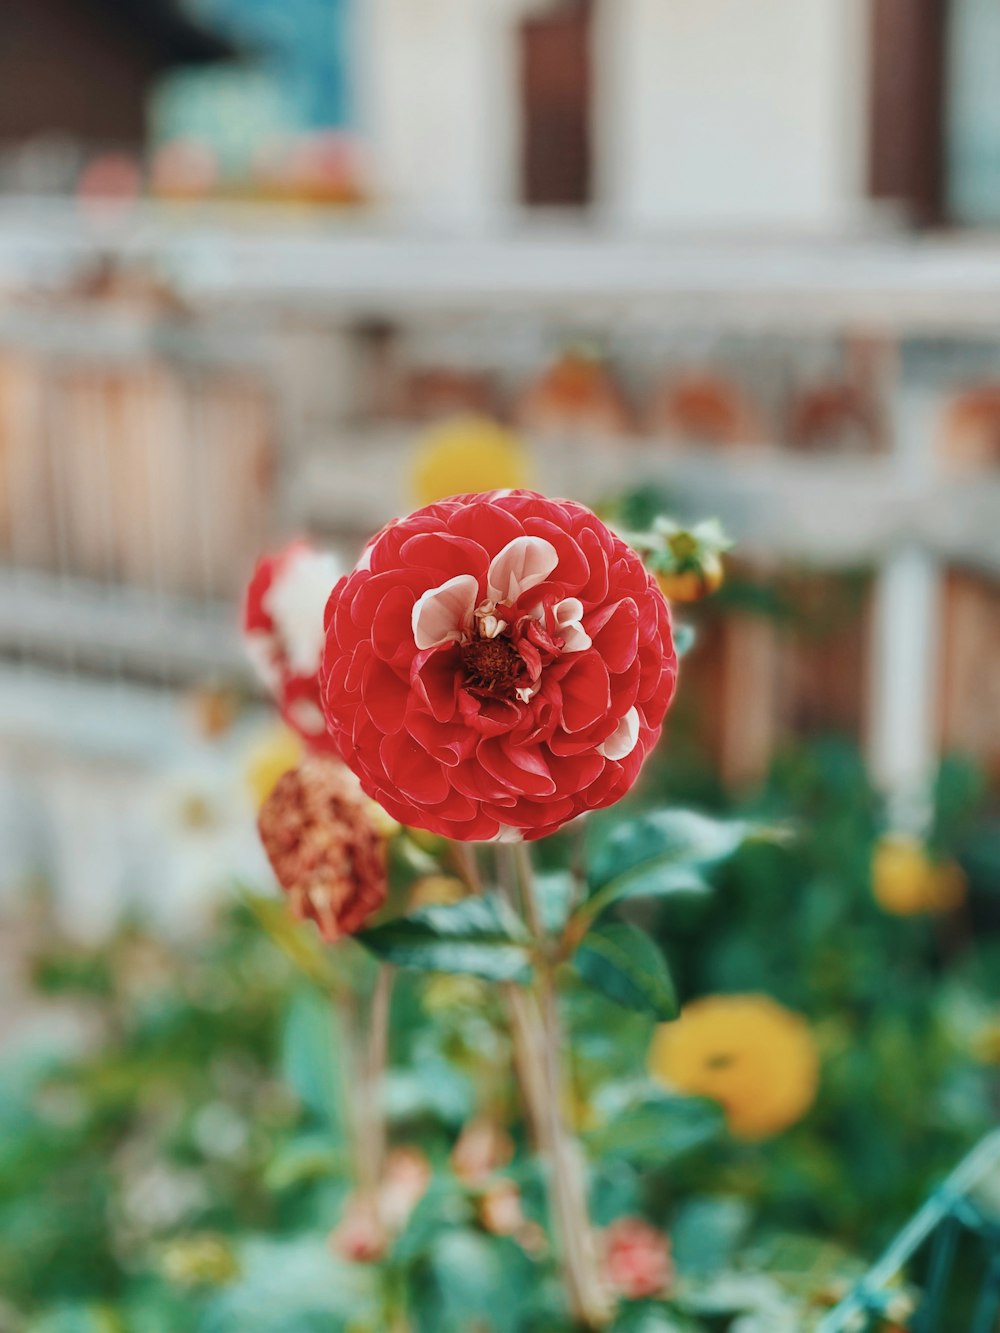 Nahaufnahme einer roten Blume in einem Garten